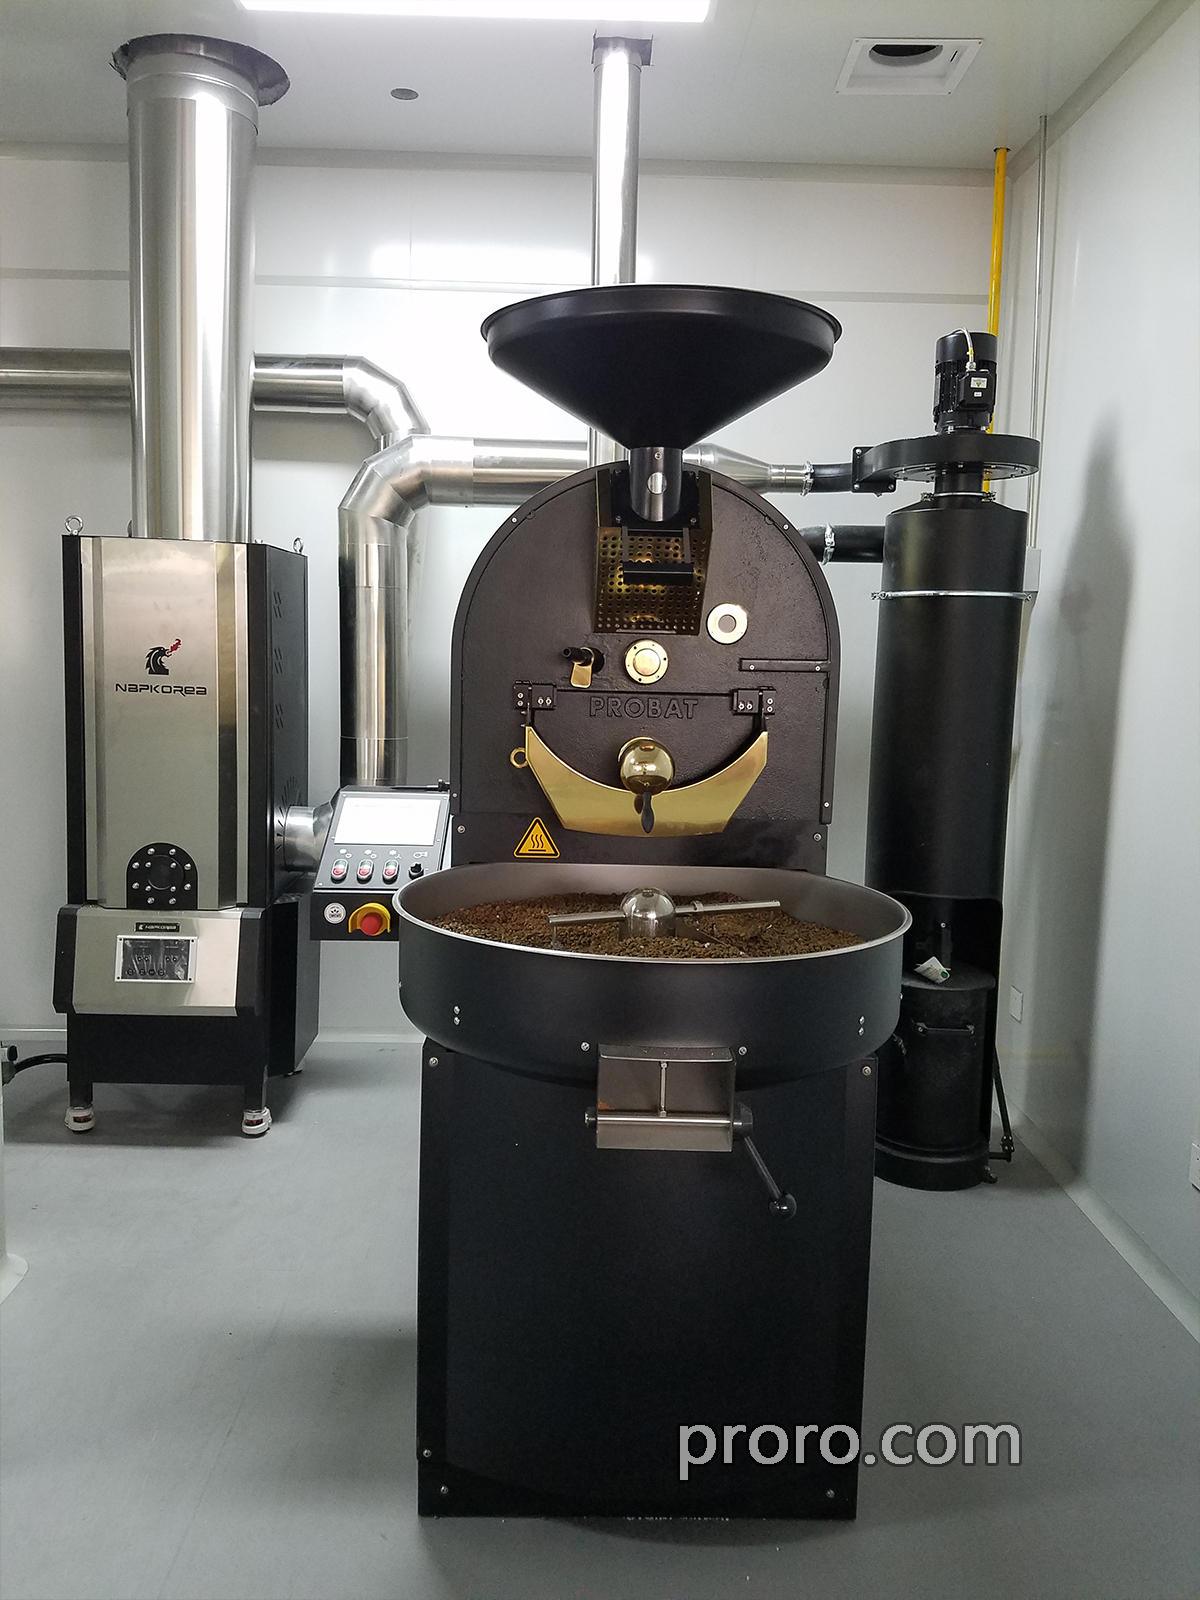 PROBAT / FUJIROYAL 富士皇家咖啡烘焙机 后燃机 安装案例 - 杭州诗瓦娜咖啡工厂店。